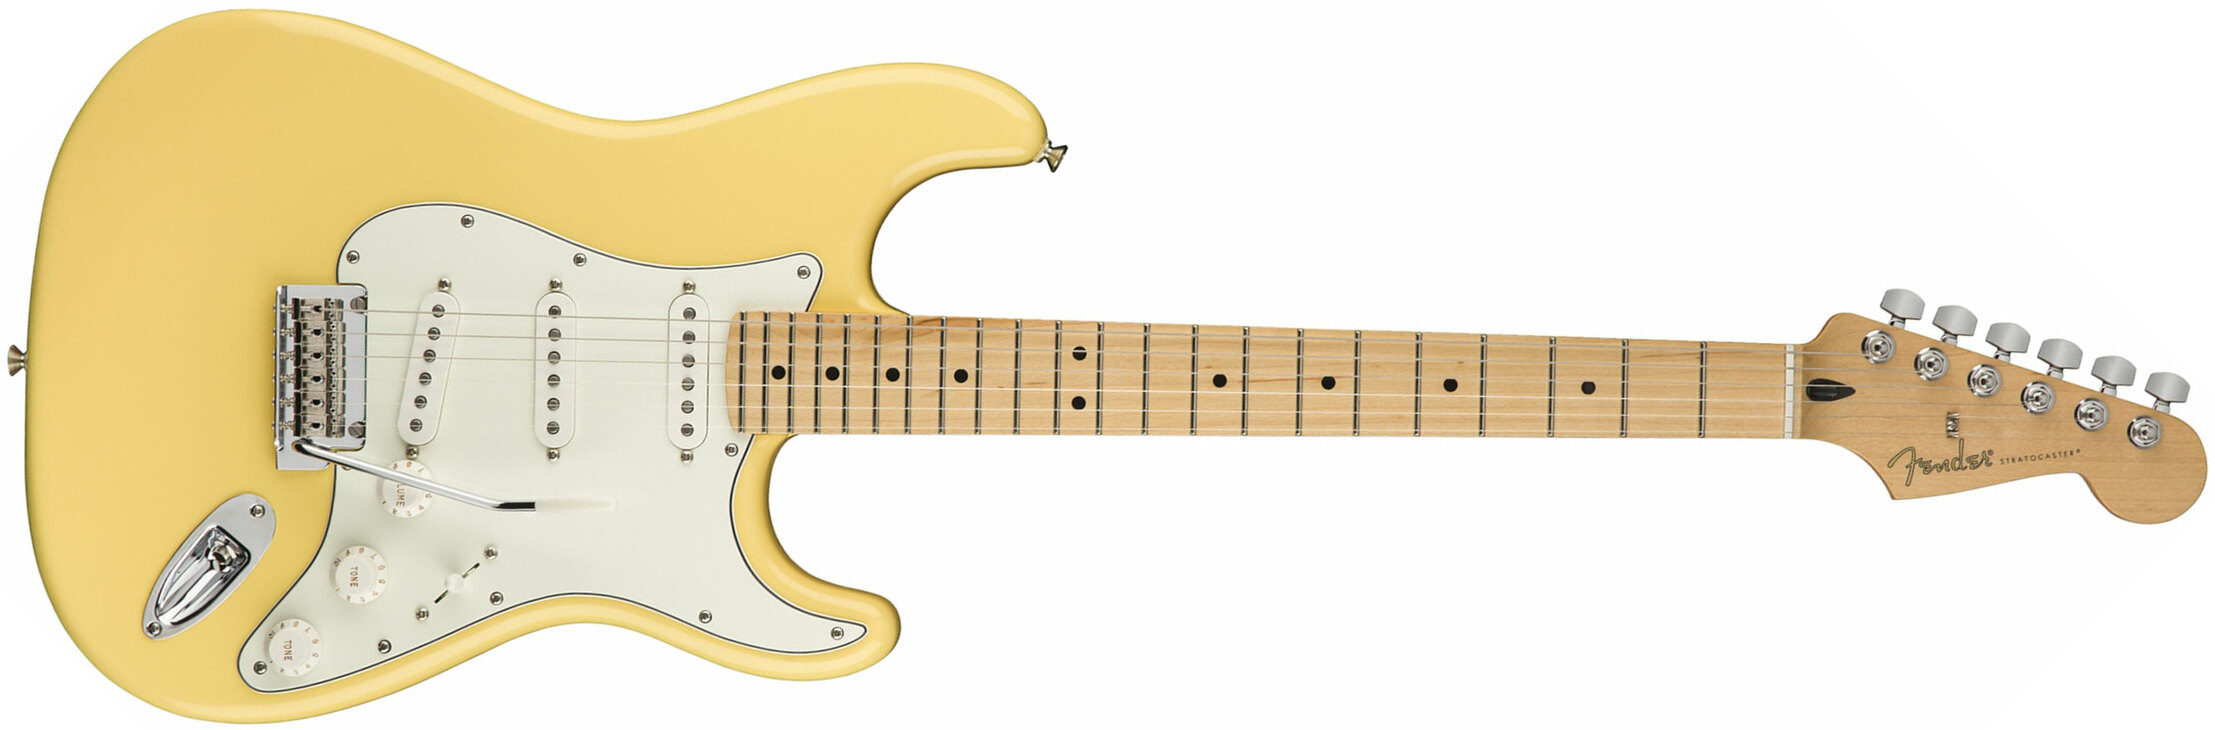 Fender Strat Player Mex Sss Mn - Buttercream - Elektrische gitaar in Str-vorm - Main picture